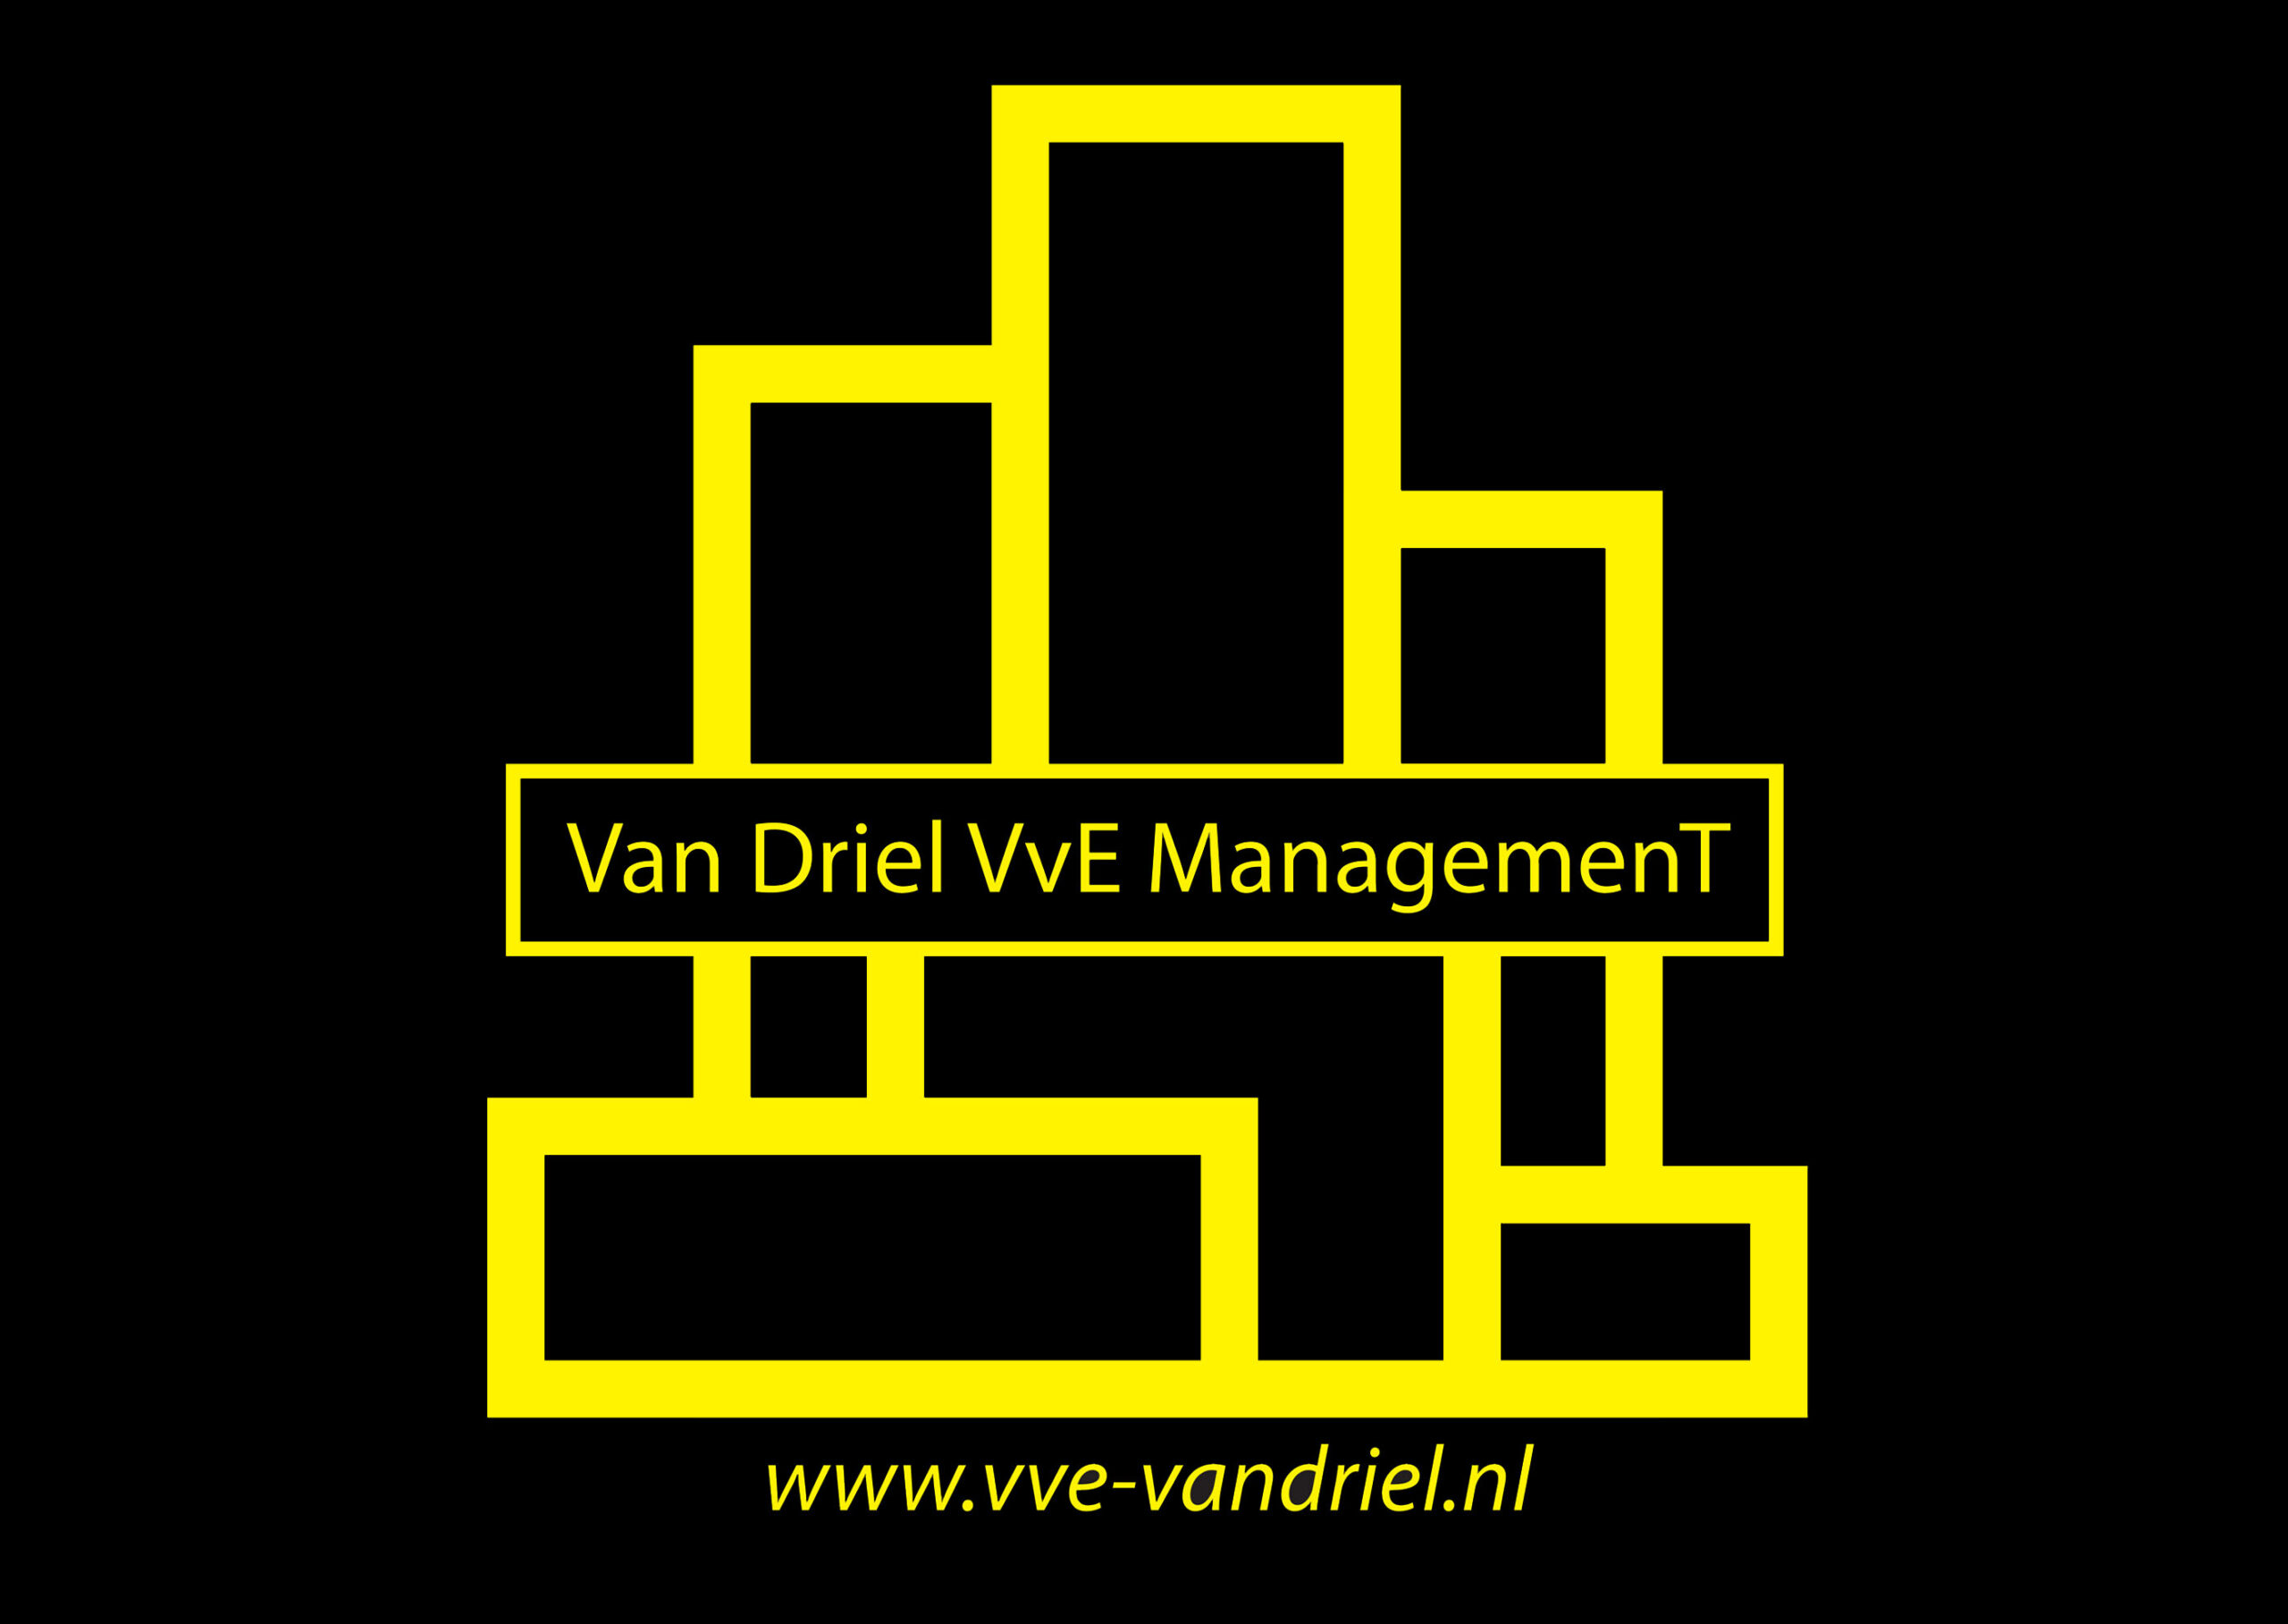 Van Driel VvE Management